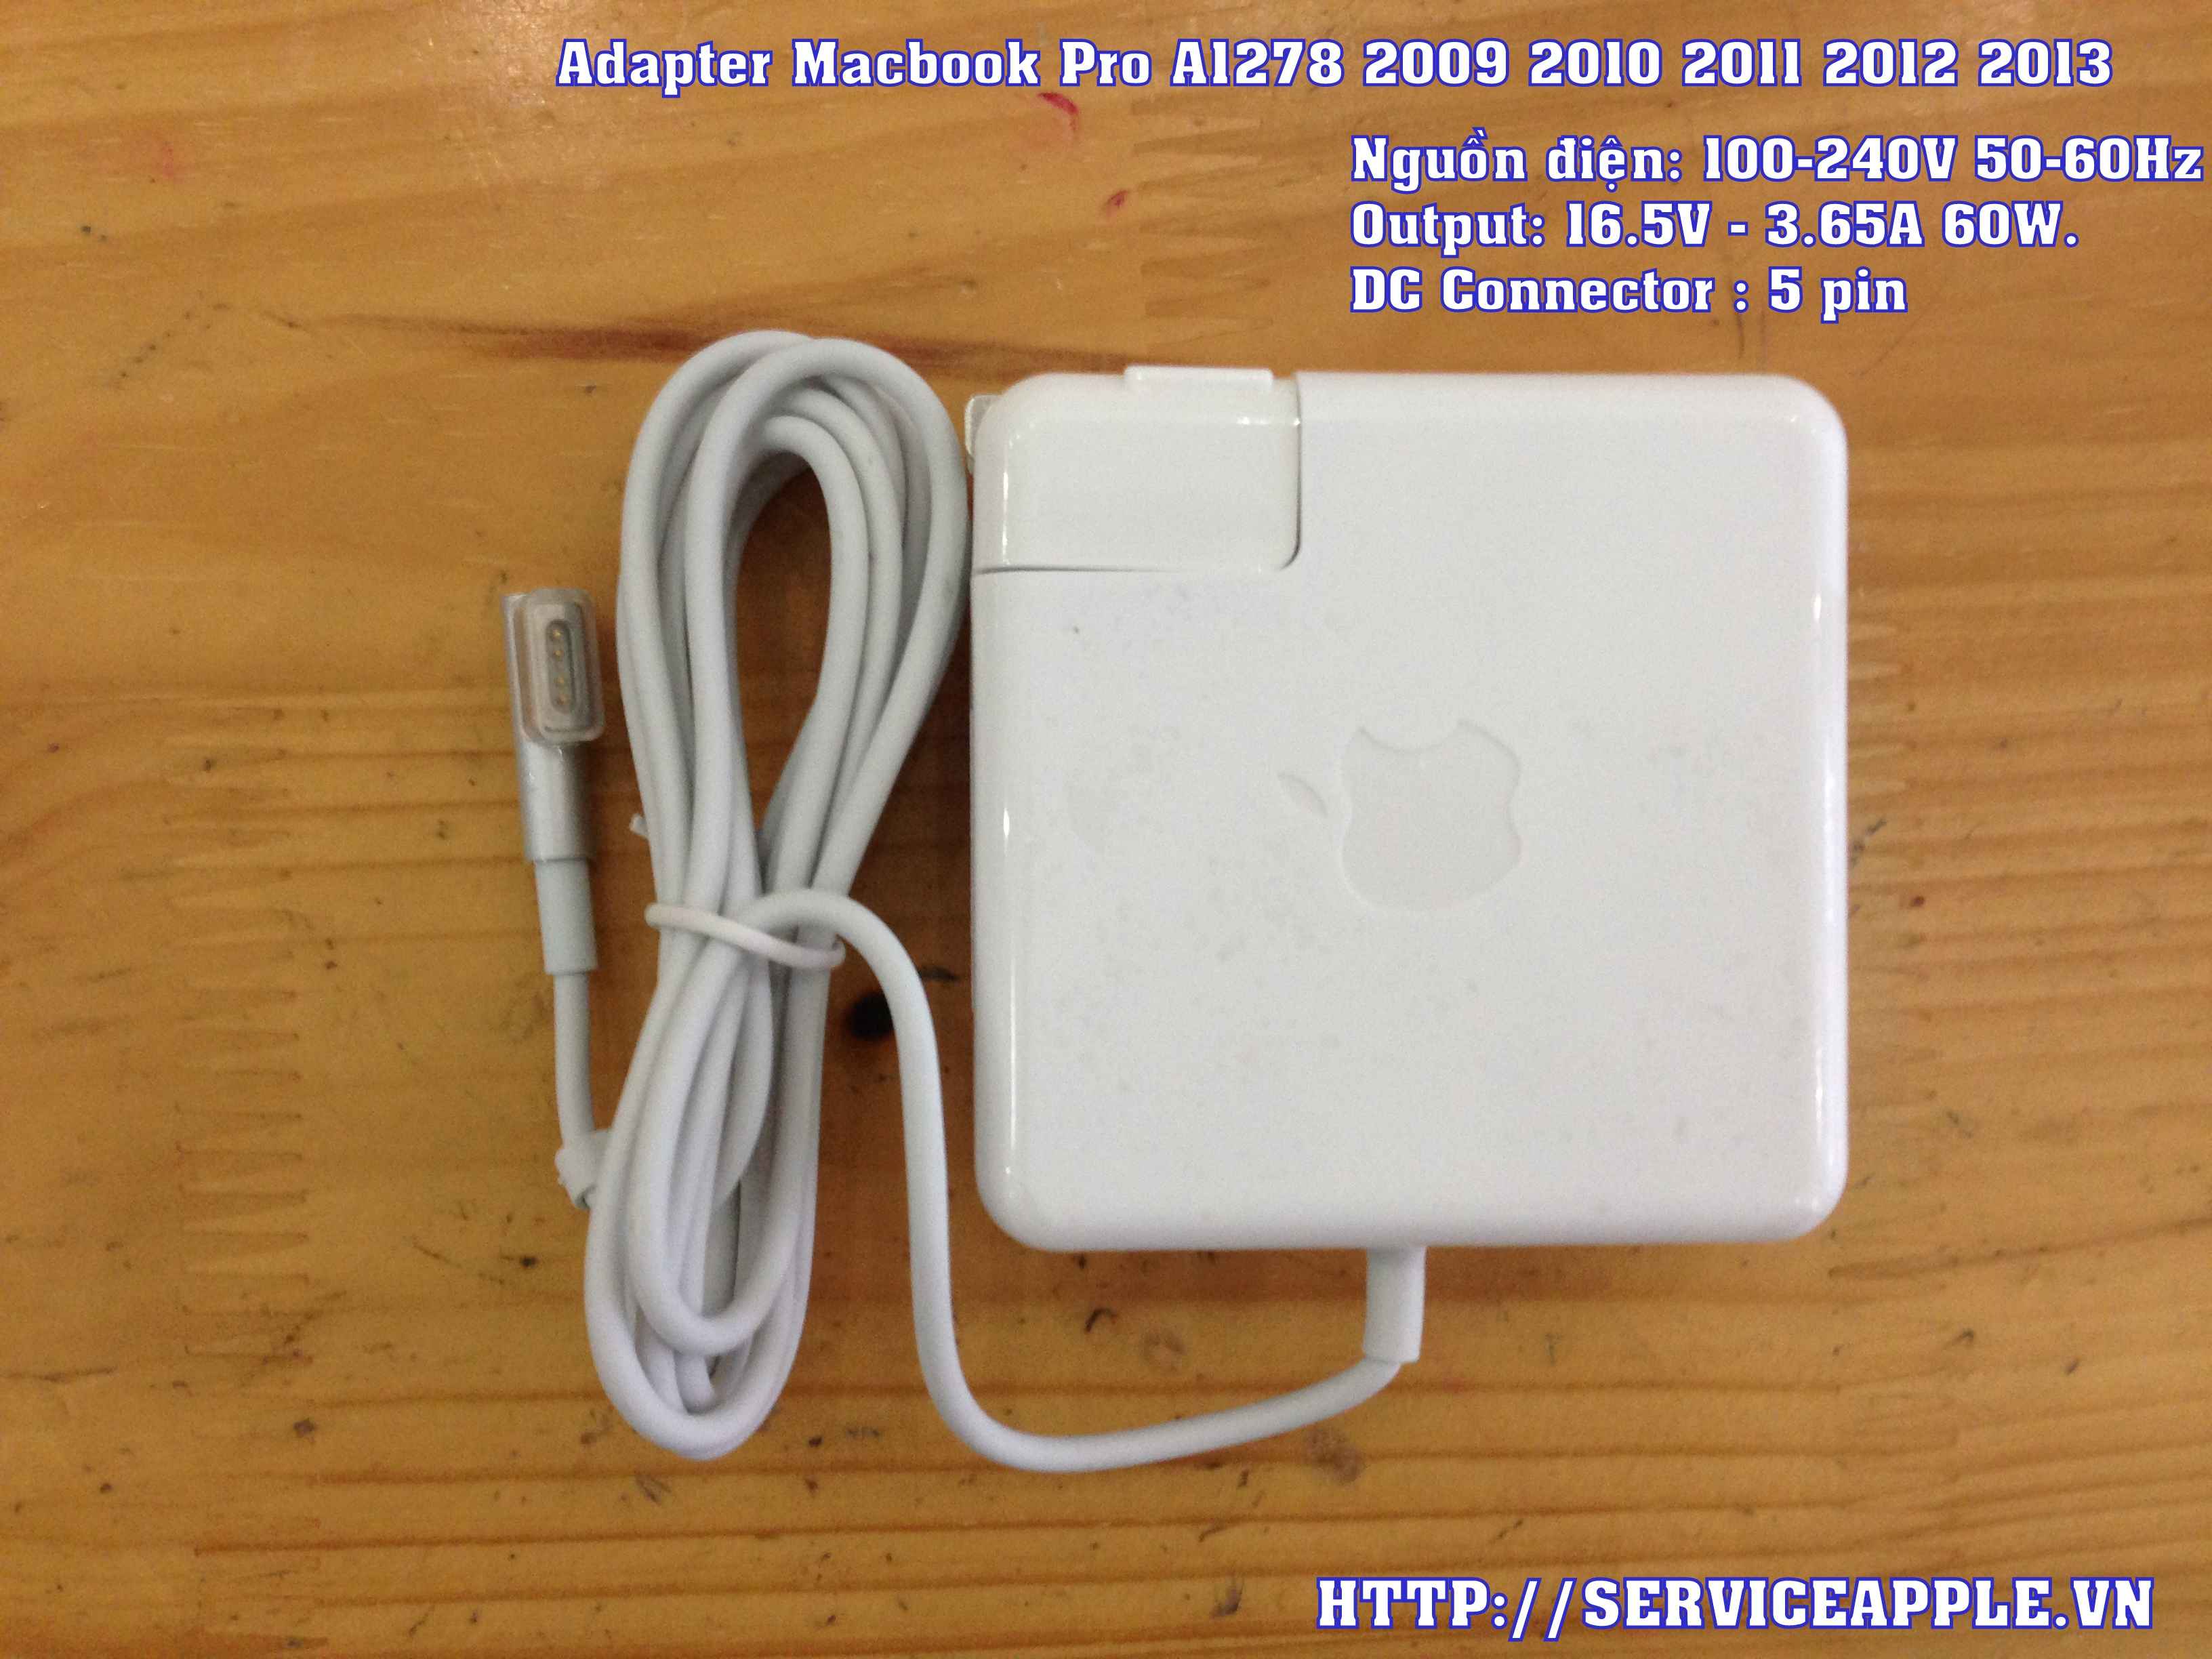 Adapter Macbook Pro A1278_1.JPG